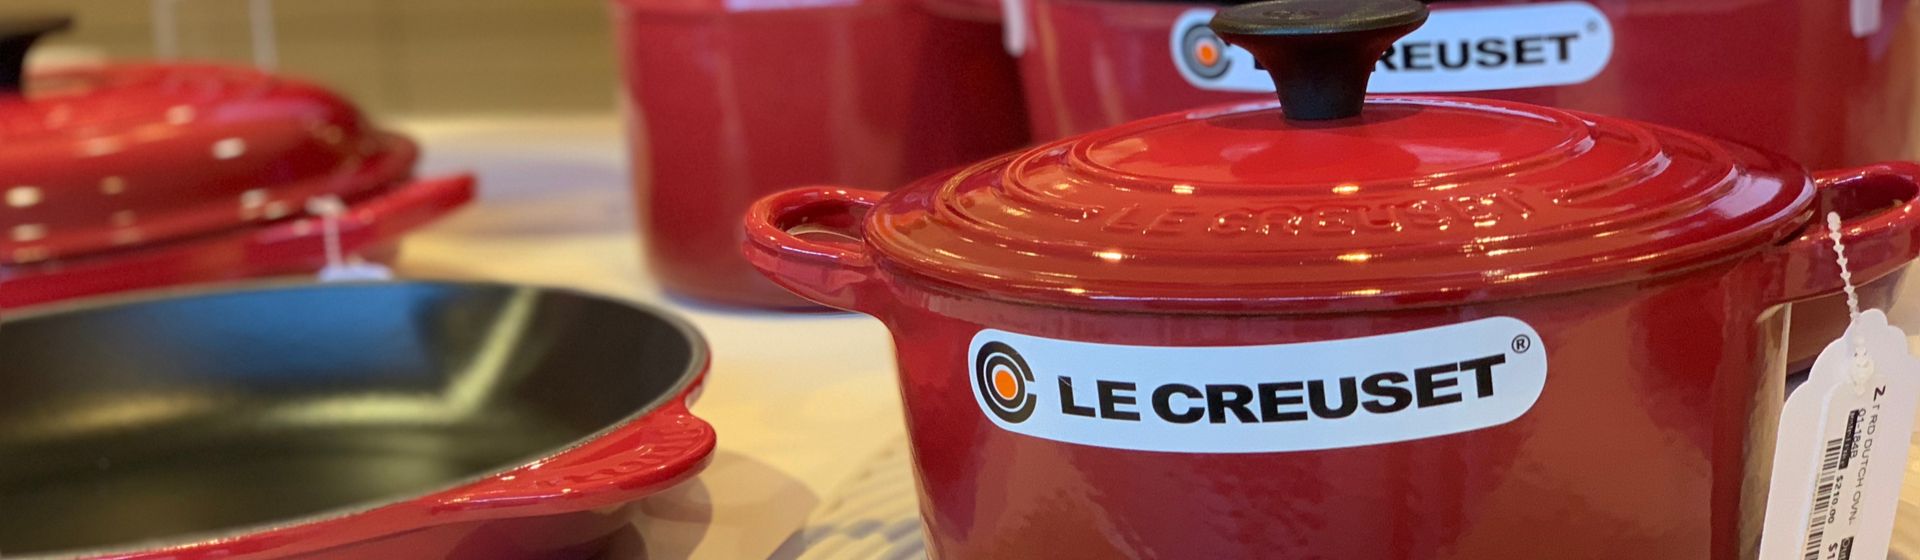 Panela Le Creuset: confira algumas opções da marca de cozinha profissional